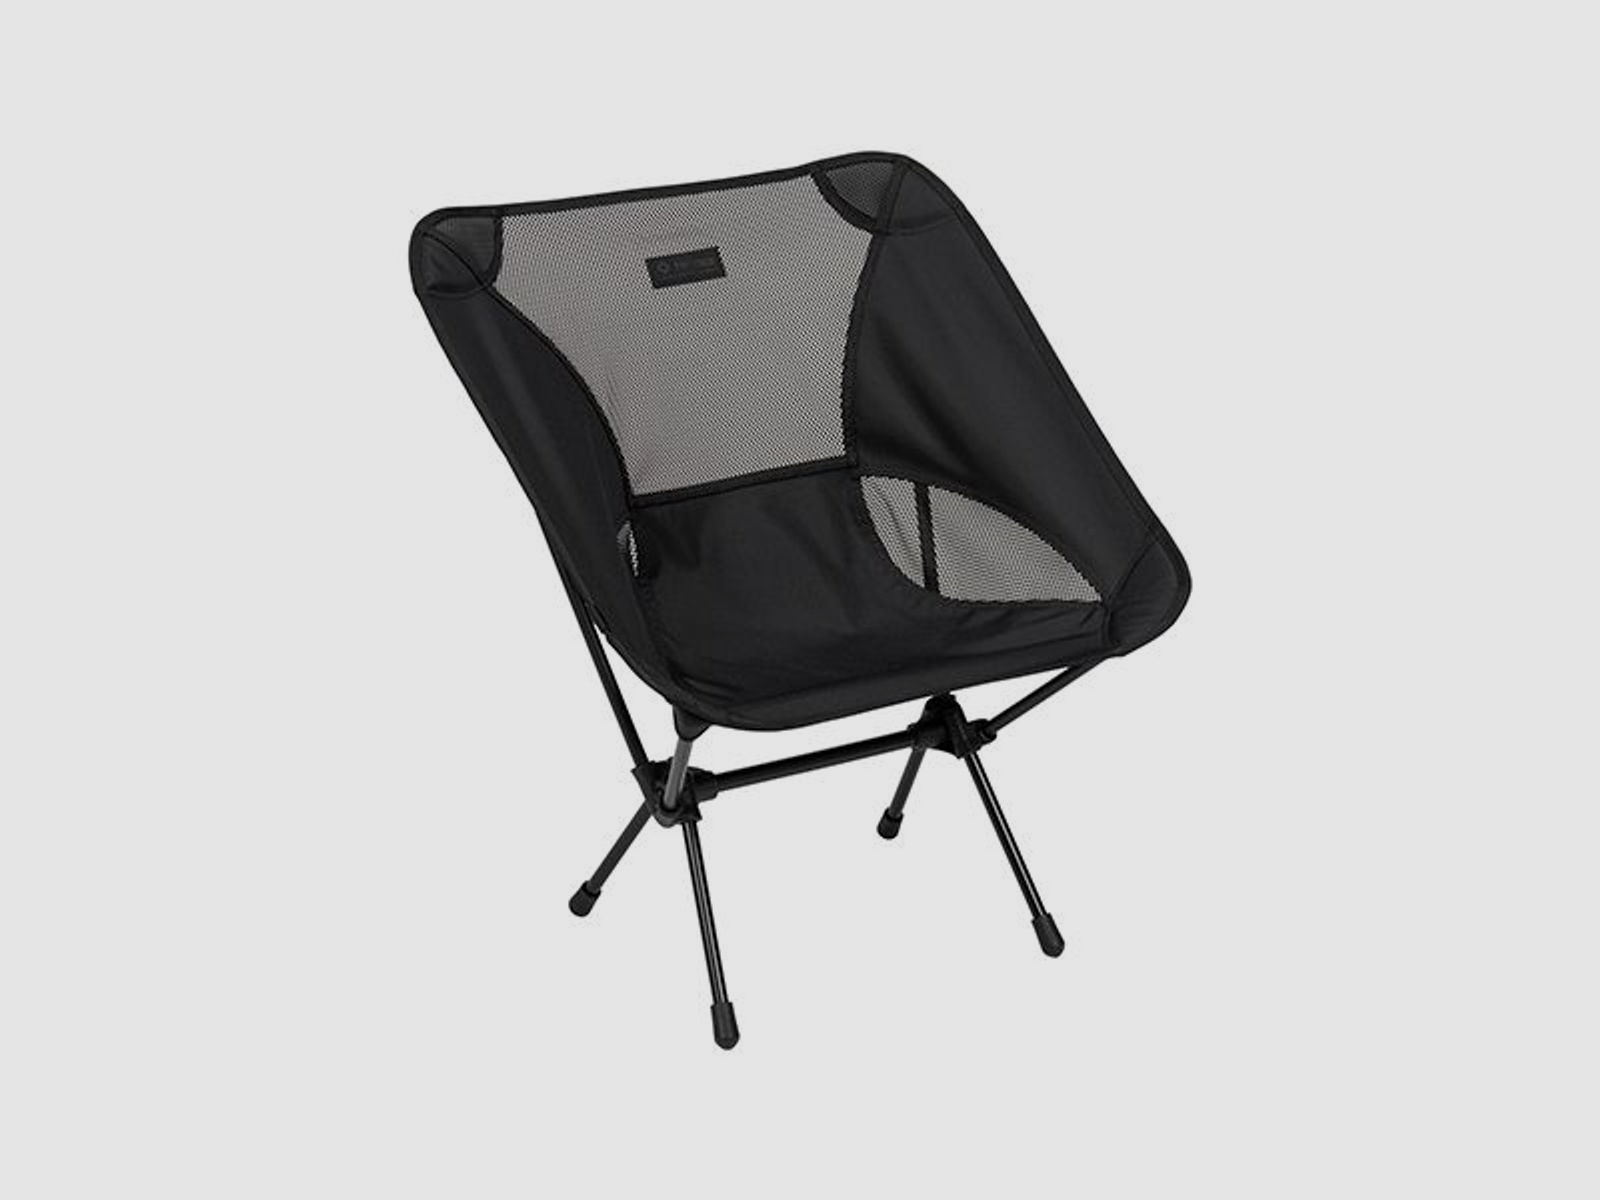 Helinox Helinox Campingstuhl Chair One blackout